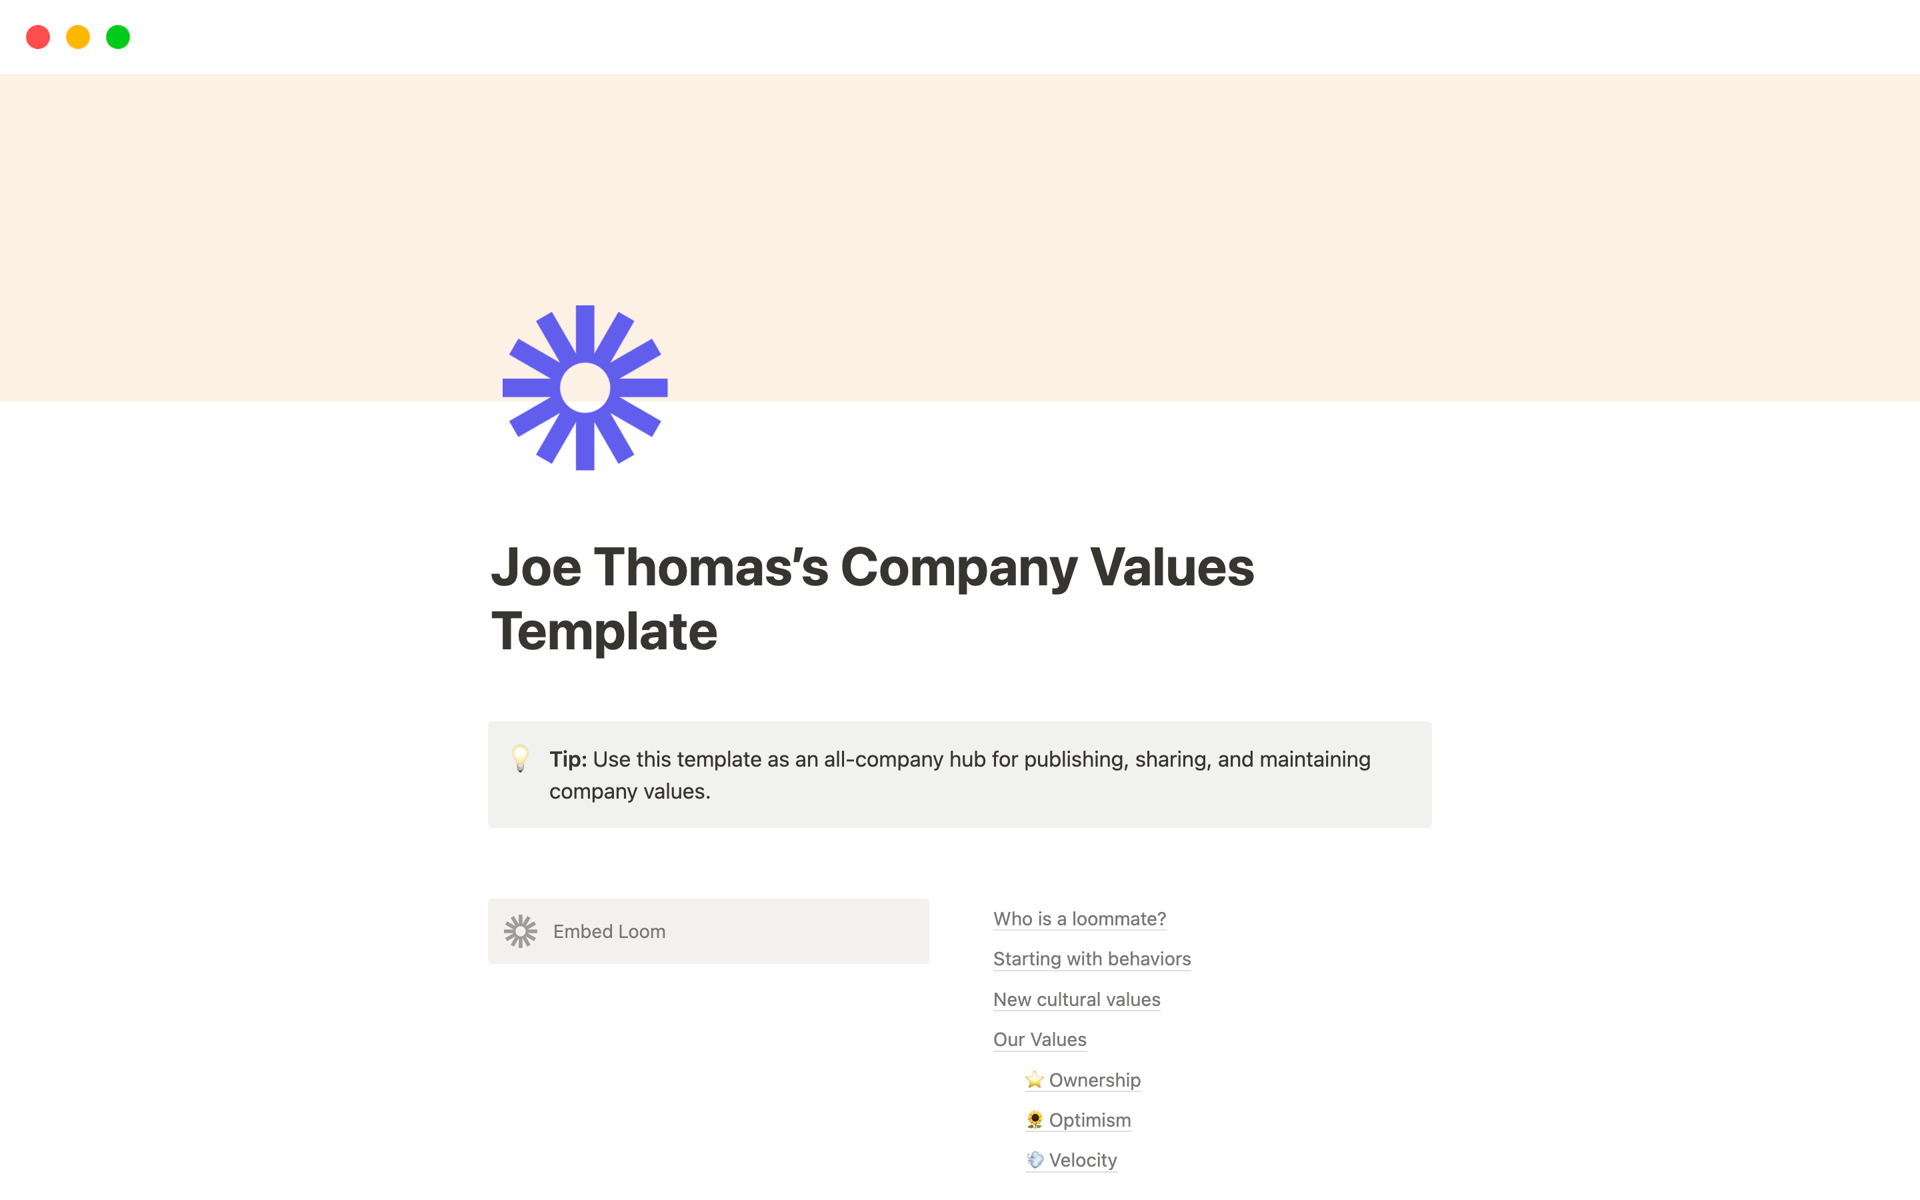 Vista previa de plantilla para Company Values Hub